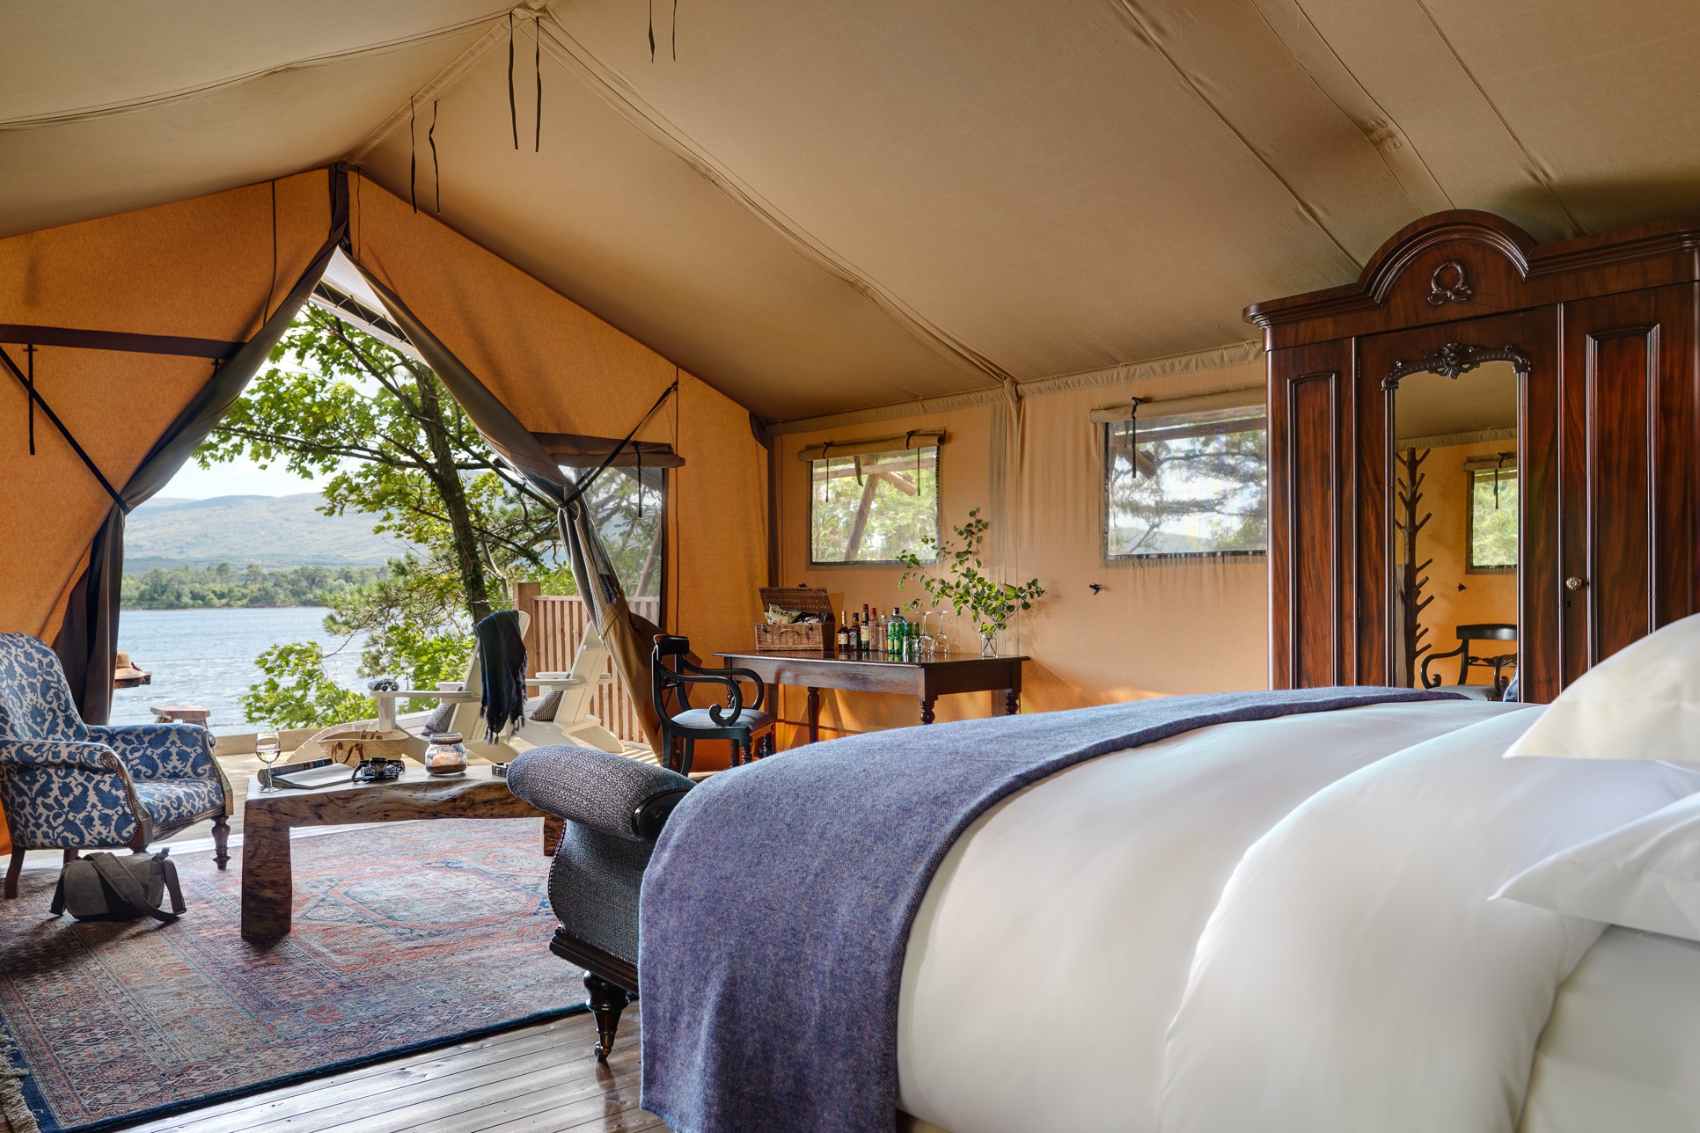 interior-of-dromquinn-manor-safari-tent-overlooking-lake-glamping-kerry